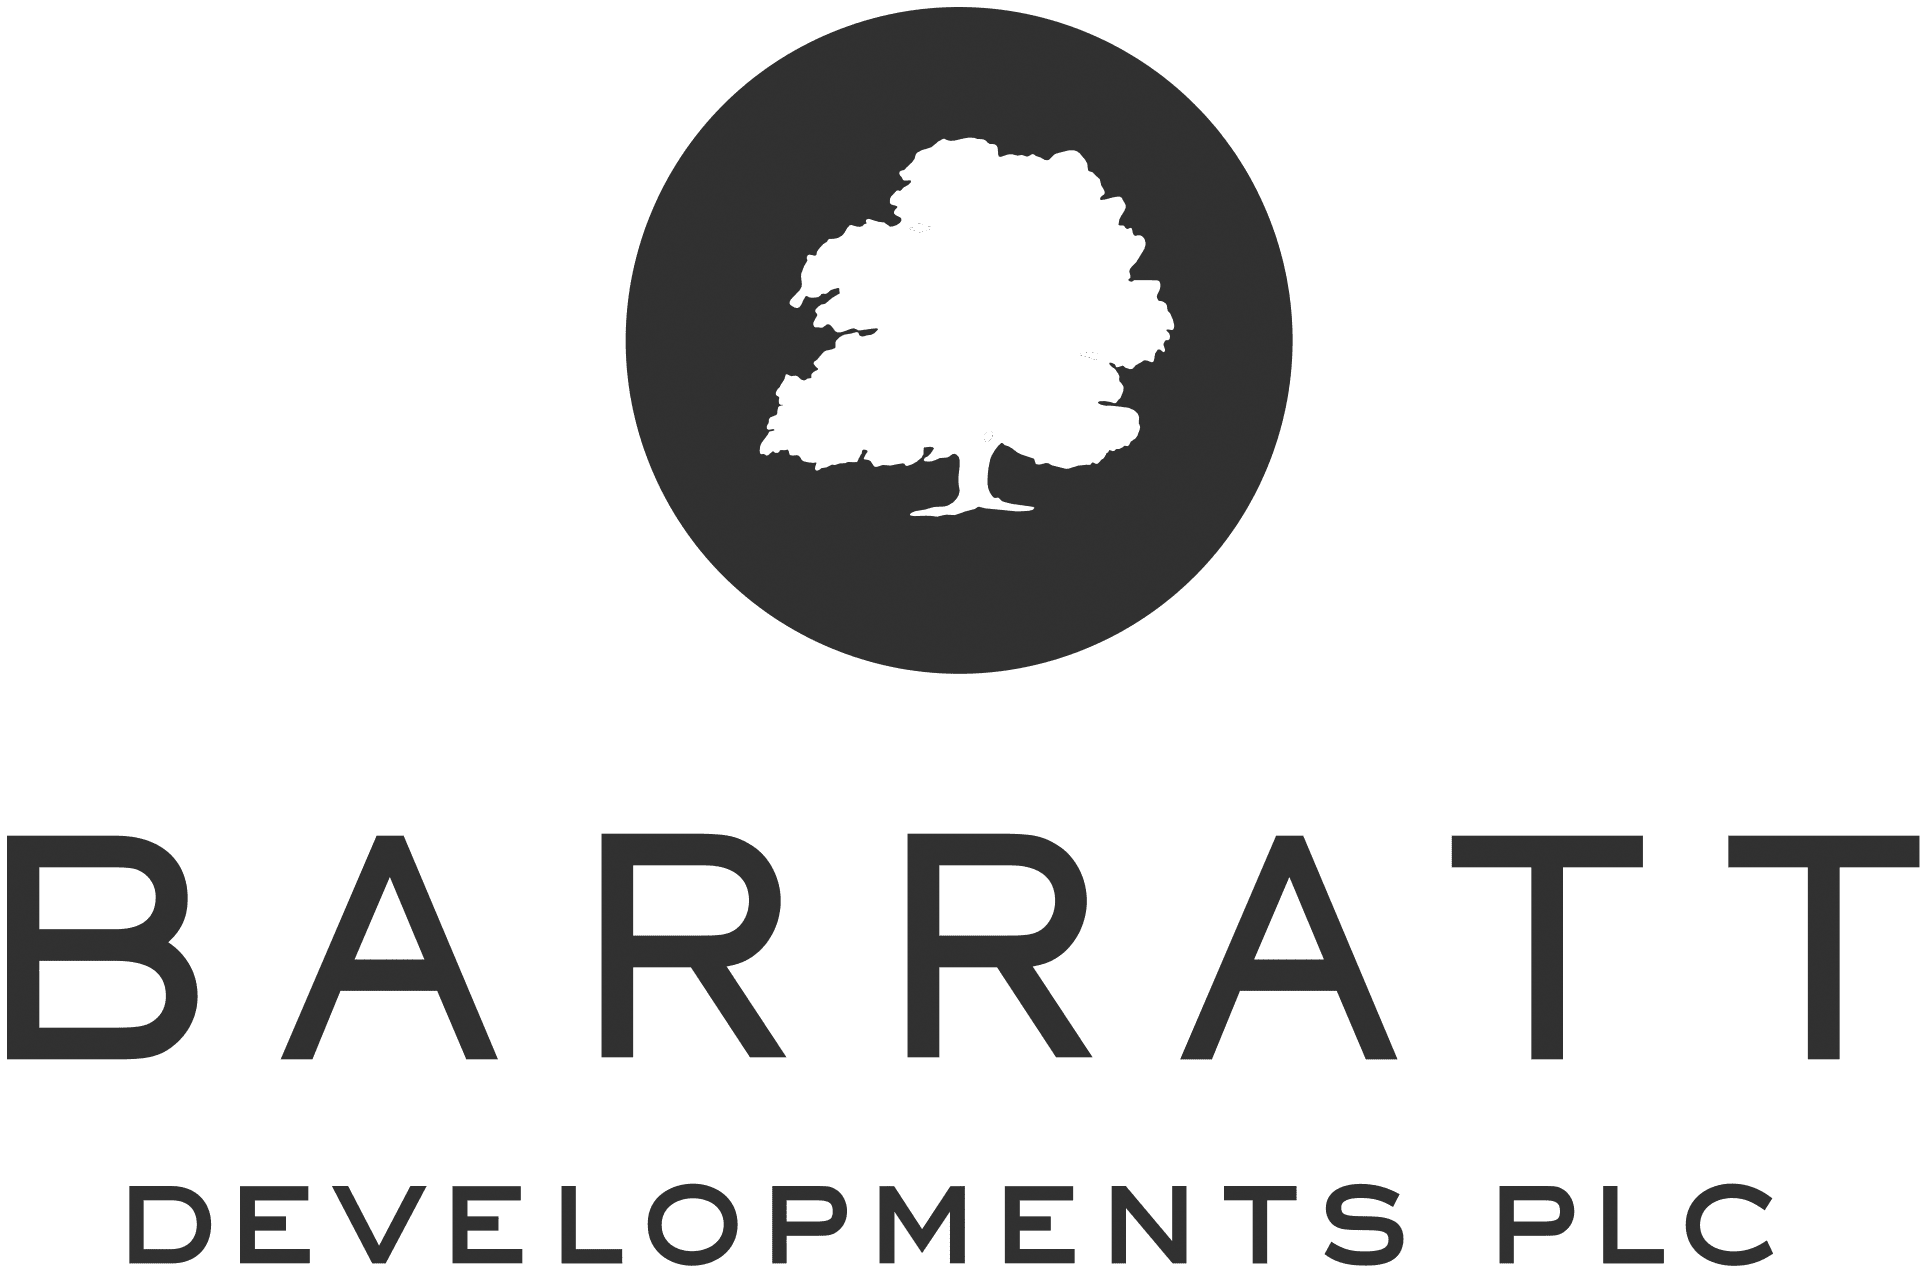 Barratt_Developments_logo-1.png